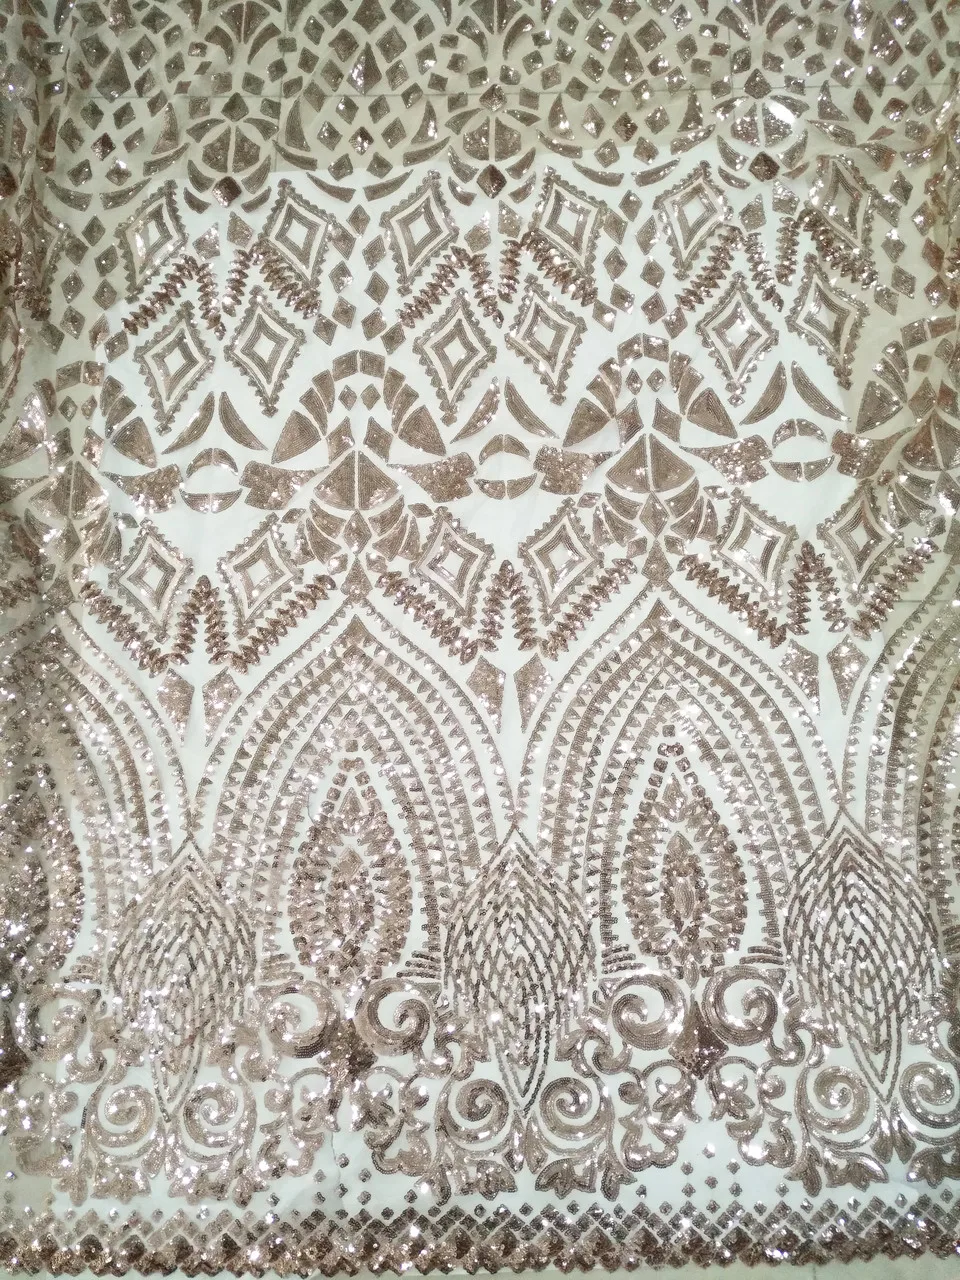 Off White африканская кружевная ткань высокое качество кружева с блестками/Последние золотые французские нигерийские кружевные ткани для свадьбы Vs-lj893